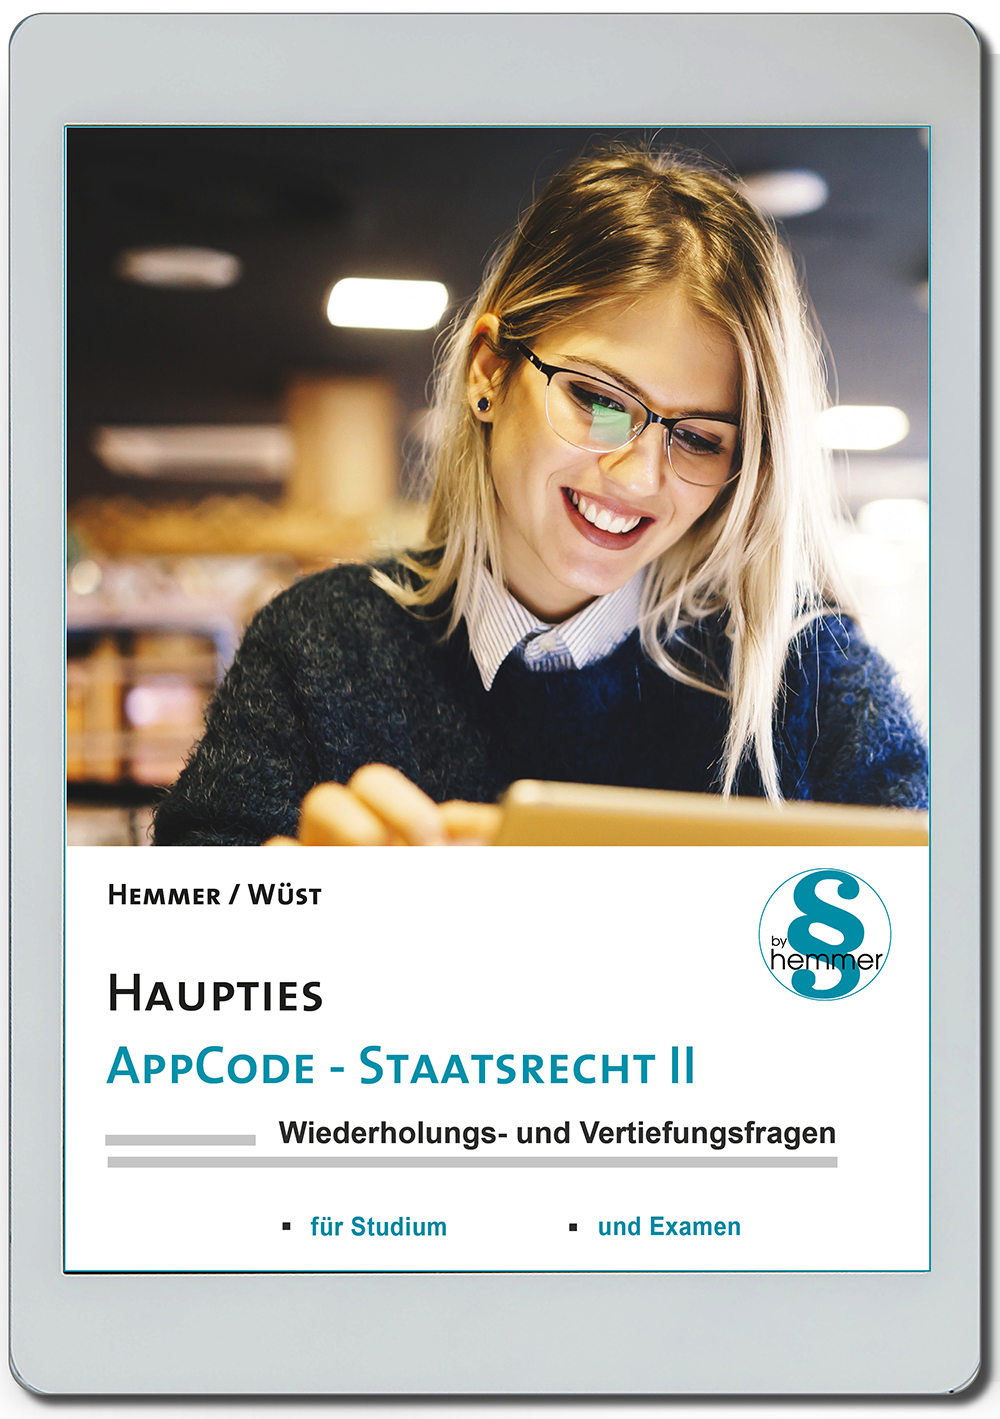 AppCode - haupties - Staatsrecht II